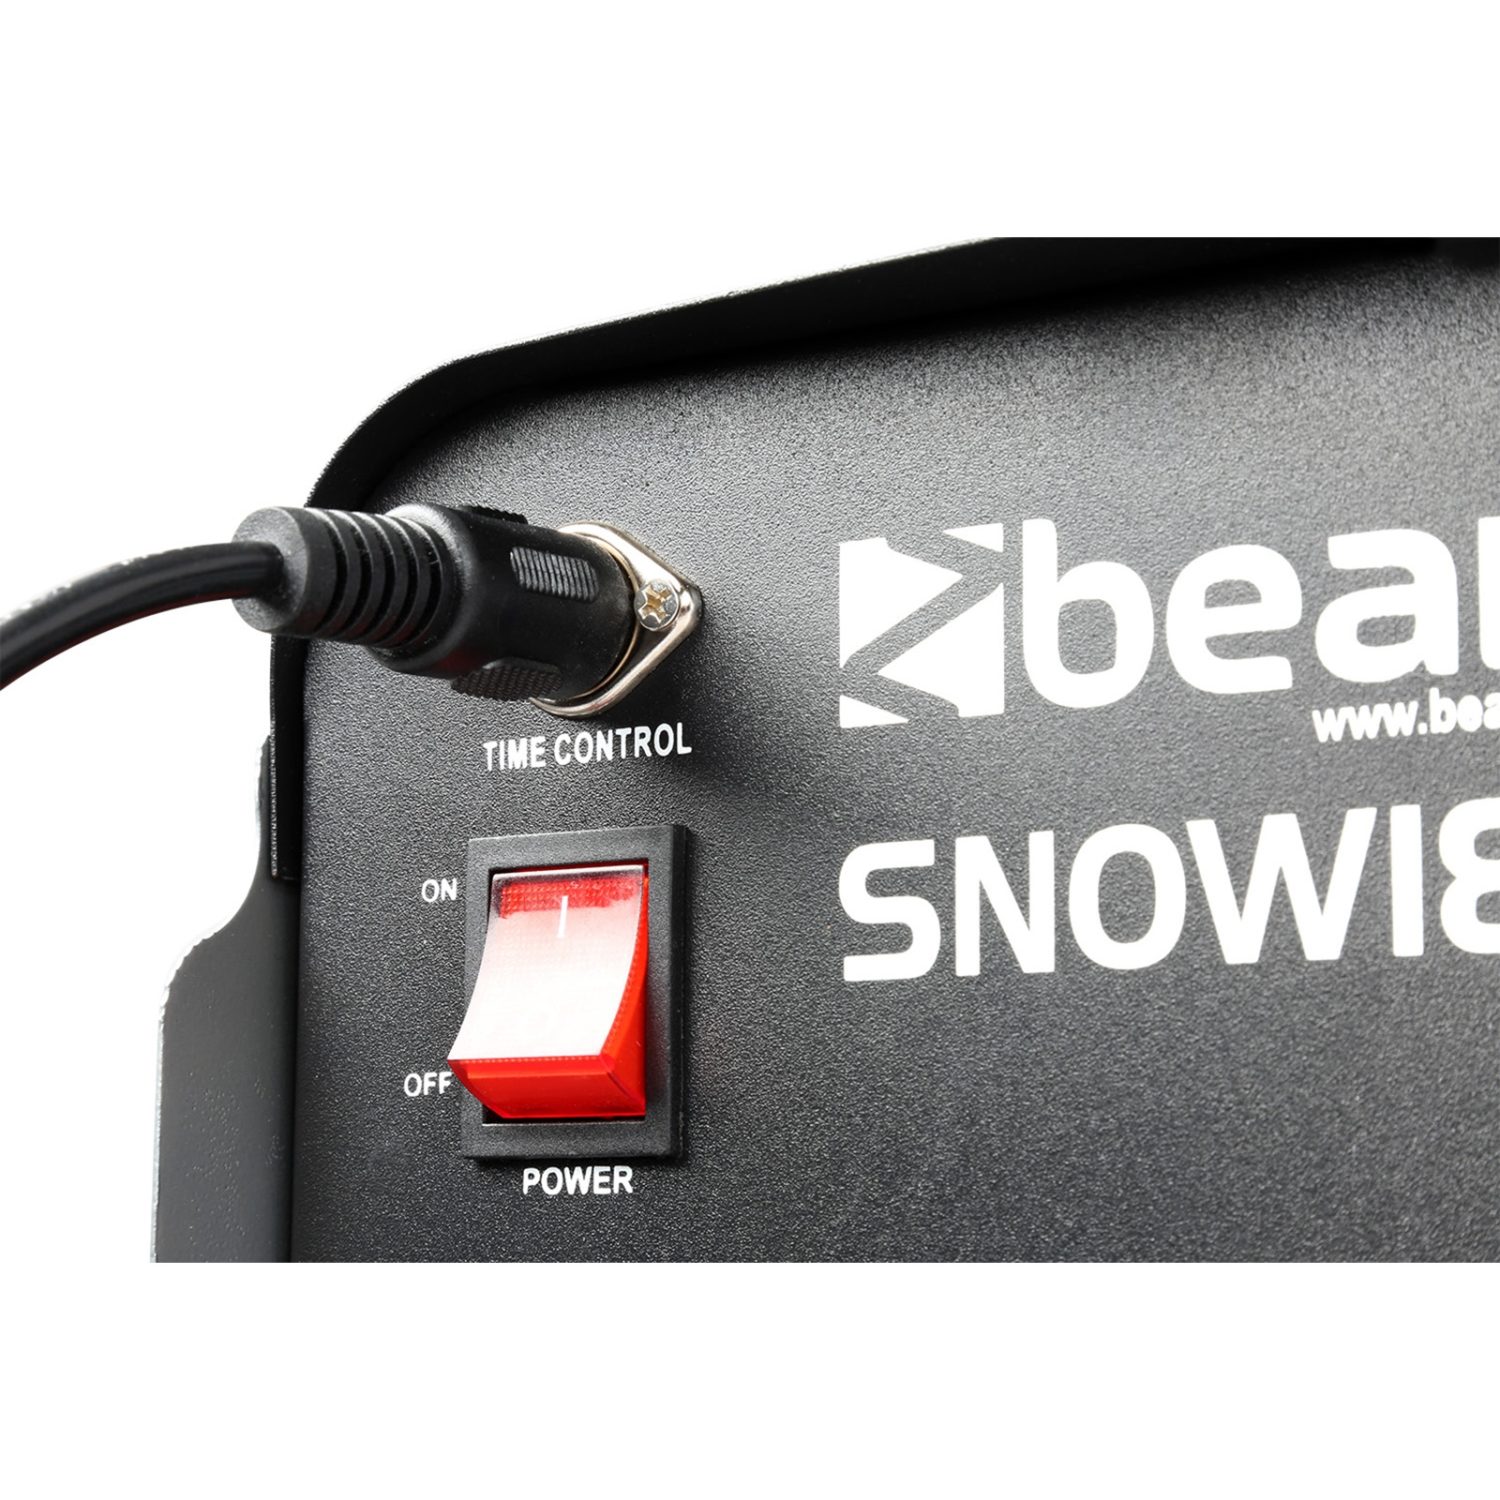 41€05 sur BeamZ SNOW1800 - Machine à Neige 1800 Watts avec Mode